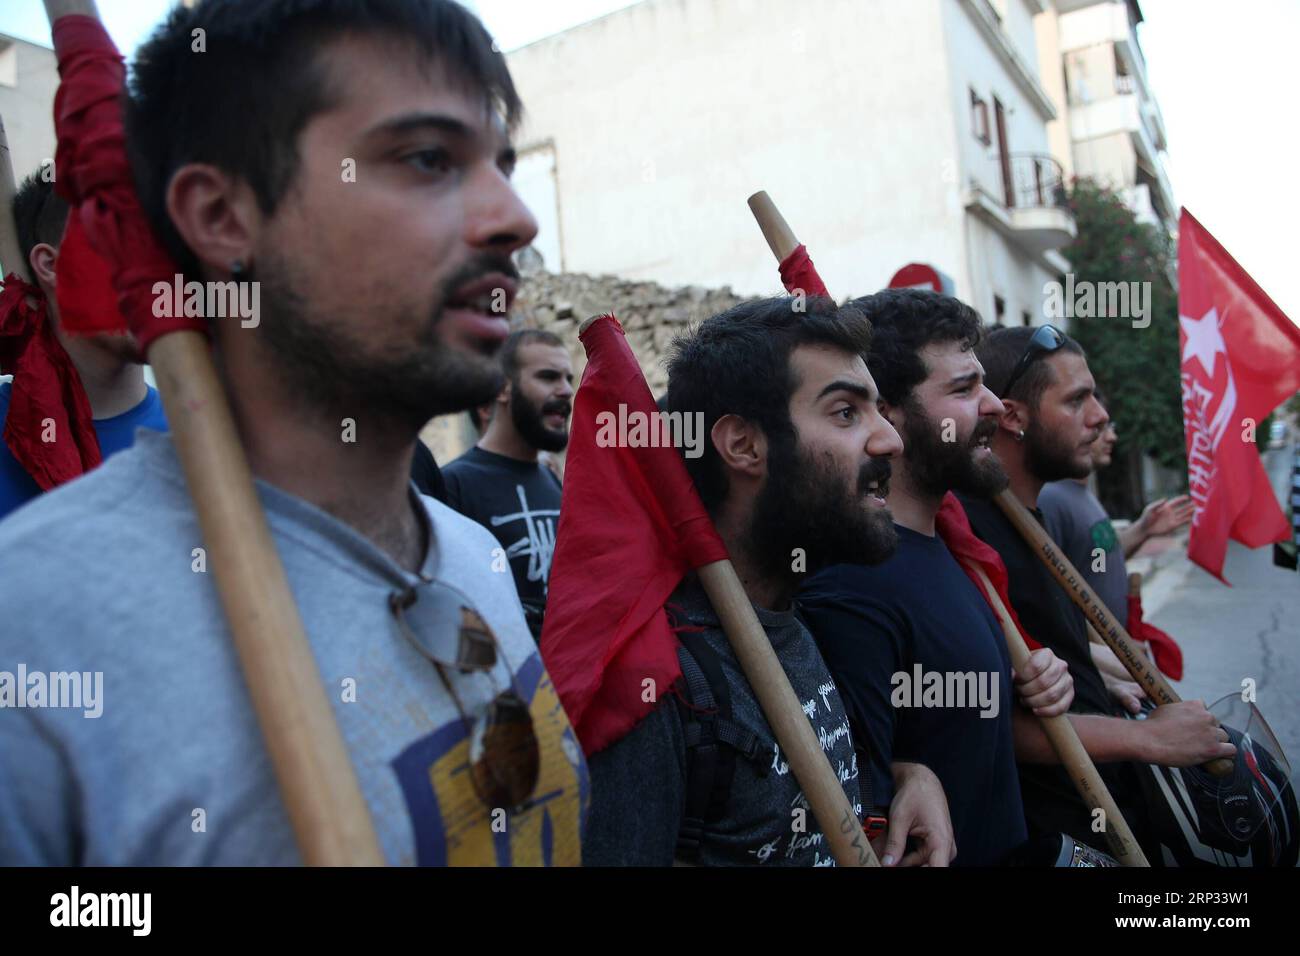 (180919) -- LE PIRÉE, 19 septembre 2018 -- des gens participent à une marche marquant le 5e anniversaire du meurtre de Pavlos Fyssas au Pirée, en Grèce, le 18 septembre 2018. Des groupes antifascistes ont organisé une série d'événements à Athènes et dans d'autres villes de Grèce mardi, cinq ans après l'assassinat du musicien Pavlos Fyssas, 34 ans, par un partisan du parti d'extrême droite. (hy) GRÈCE-PIRÉE-ANNIVERSAIRE-ANTIFASCISTE MUSICIEN-MEURTRE MariosxLolos PUBLICATIONxNOTxINxCHN Banque D'Images